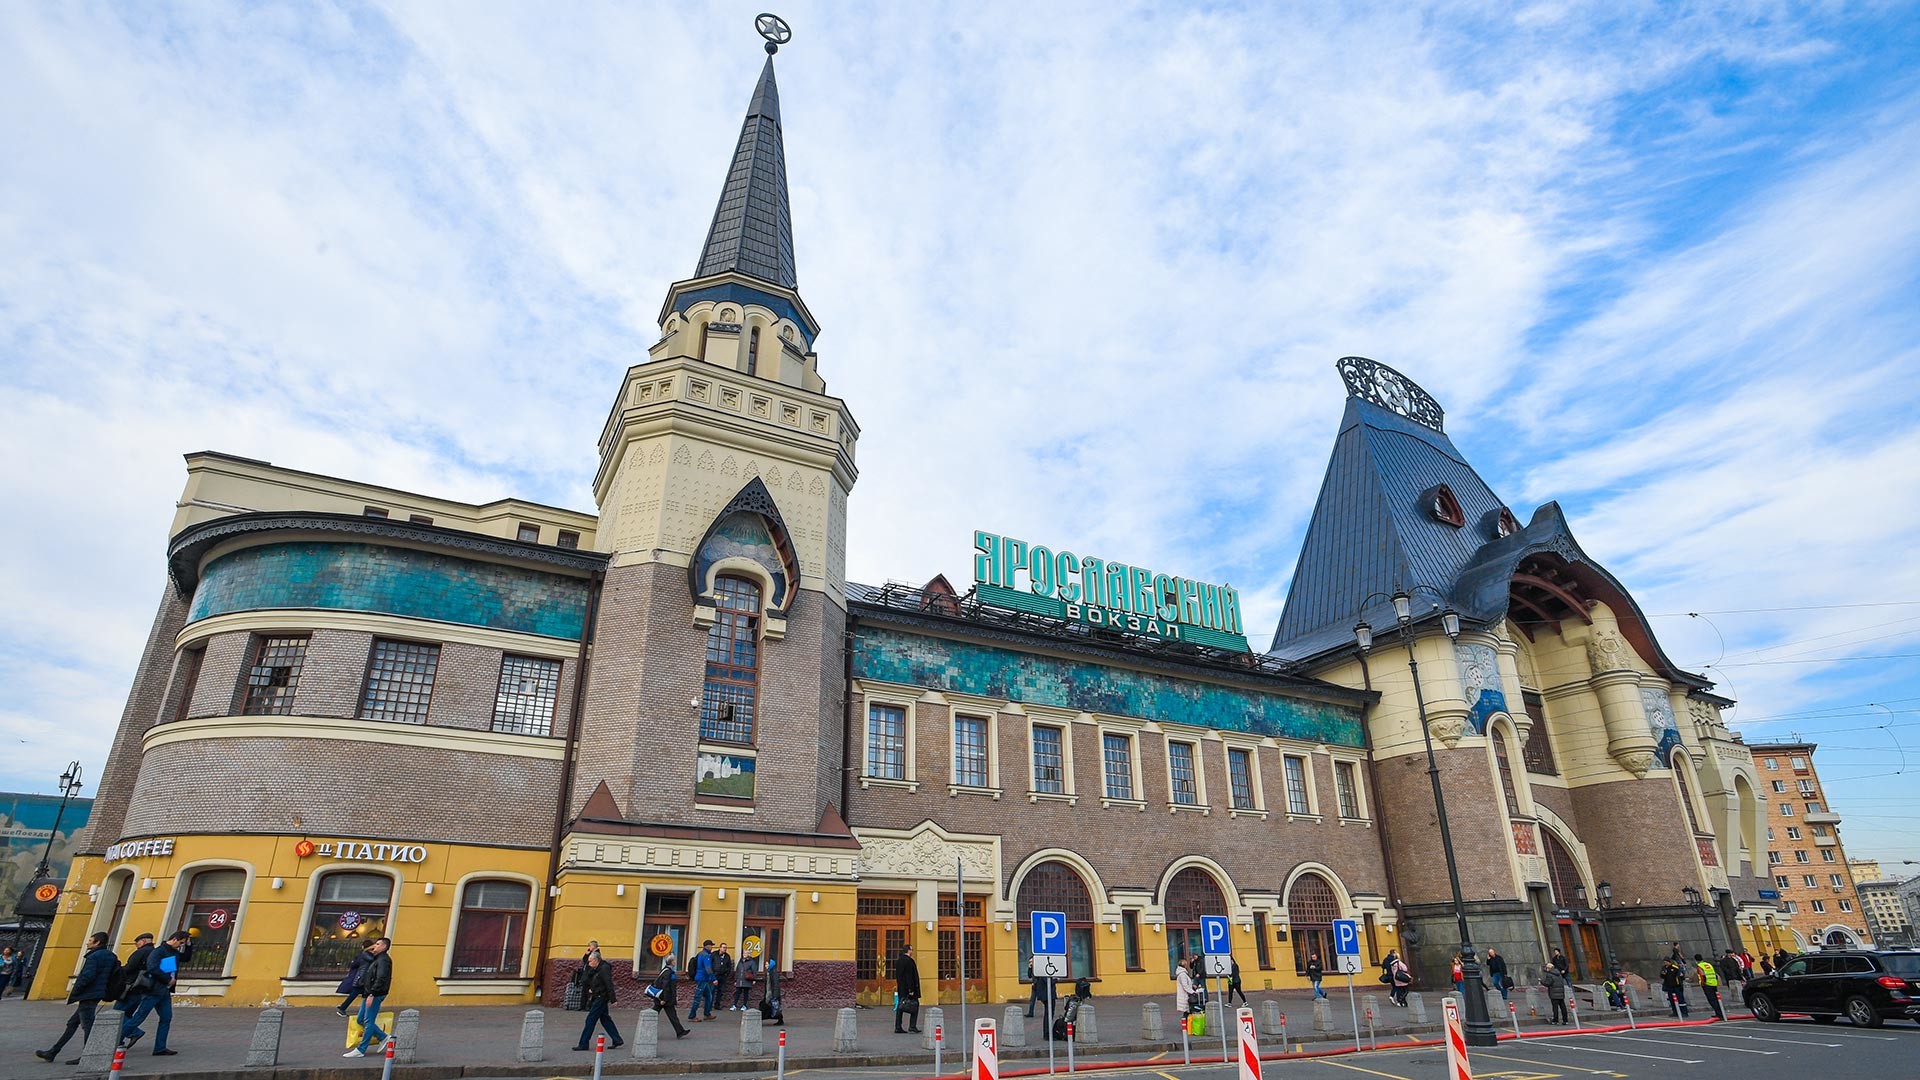 ярославский вокзал фото снаружи